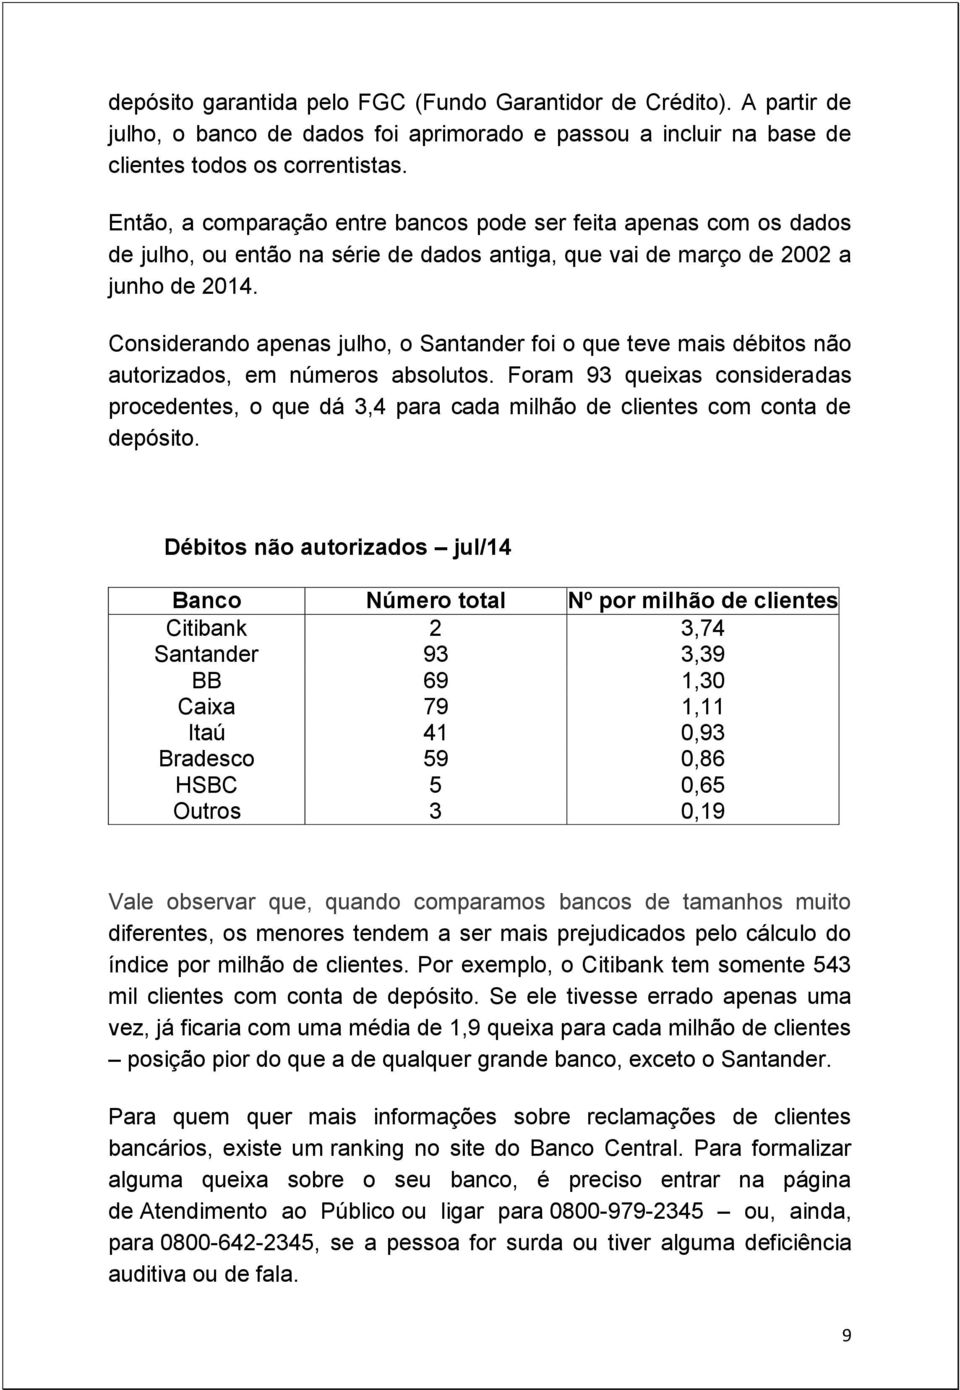 Considerando apenas julho, o Santander foi o que teve mais débitos não autorizados, em números absolutos.